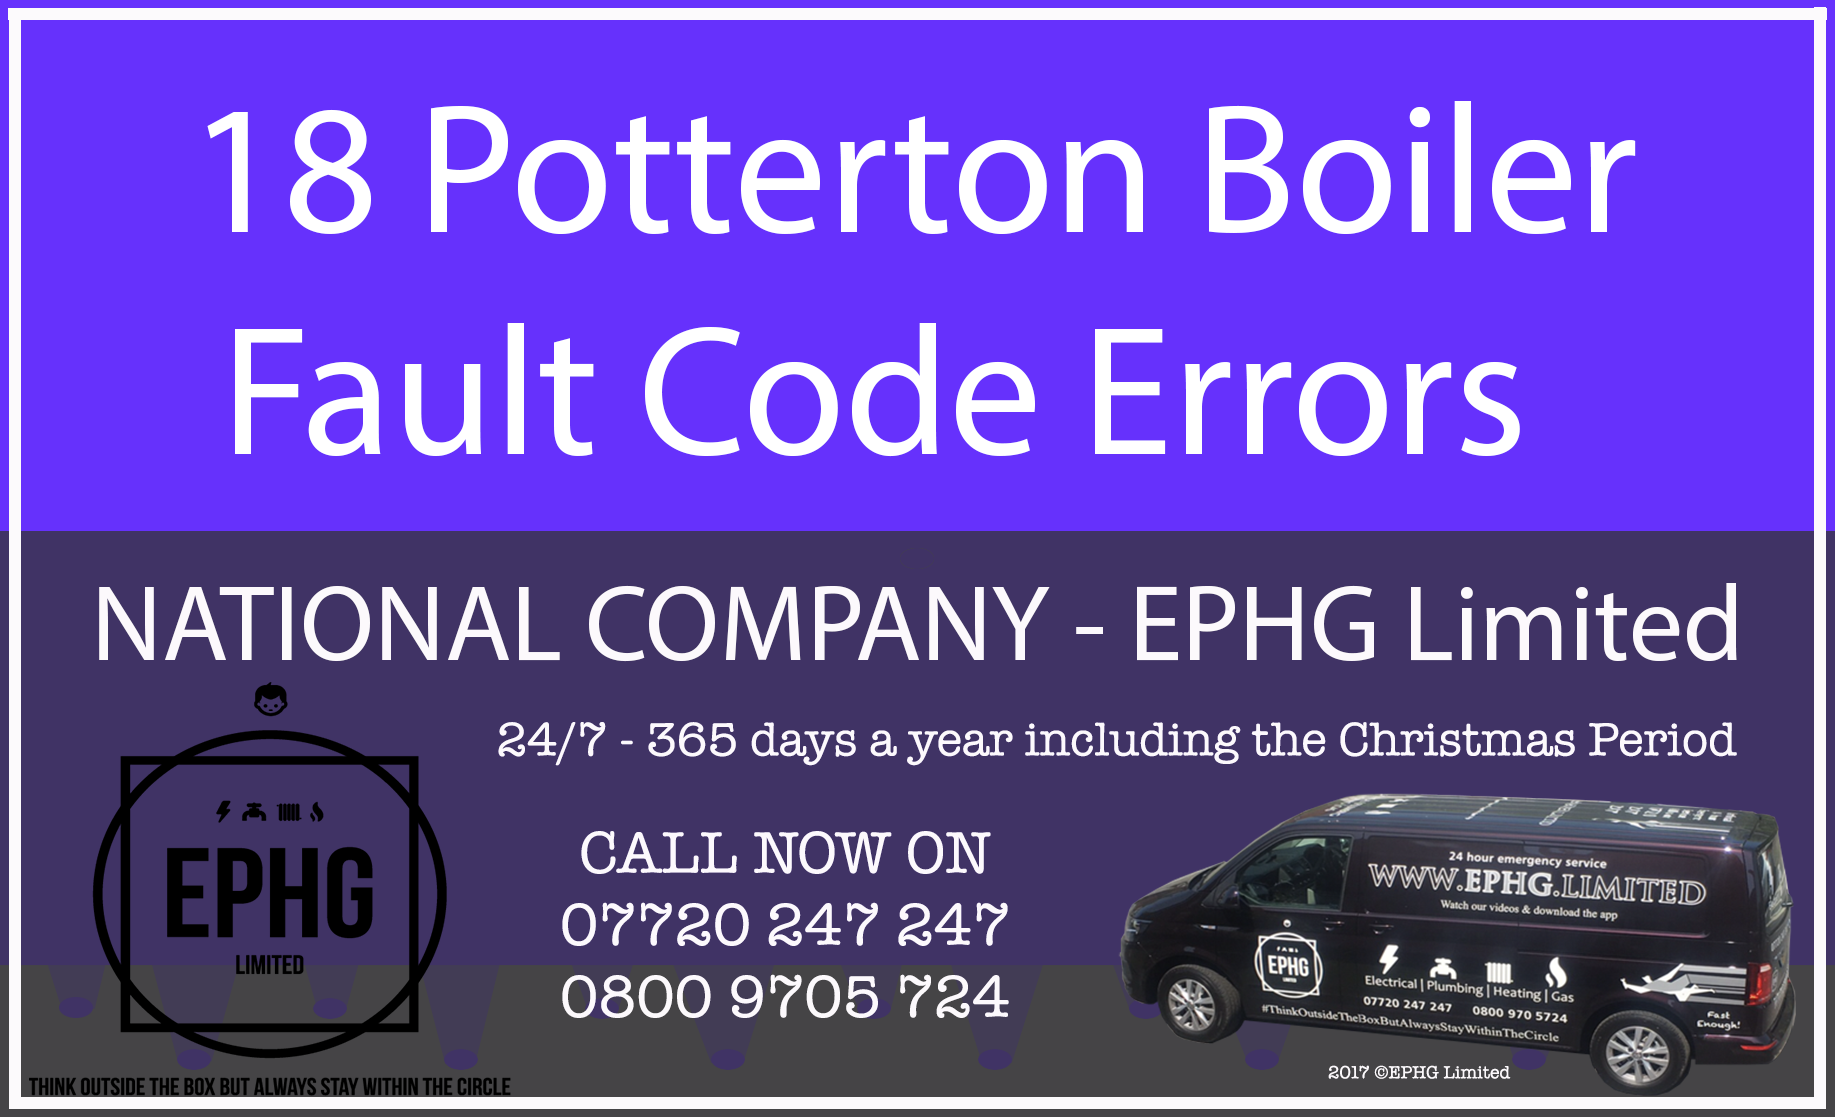 Potterton Boiler Common Error Codes